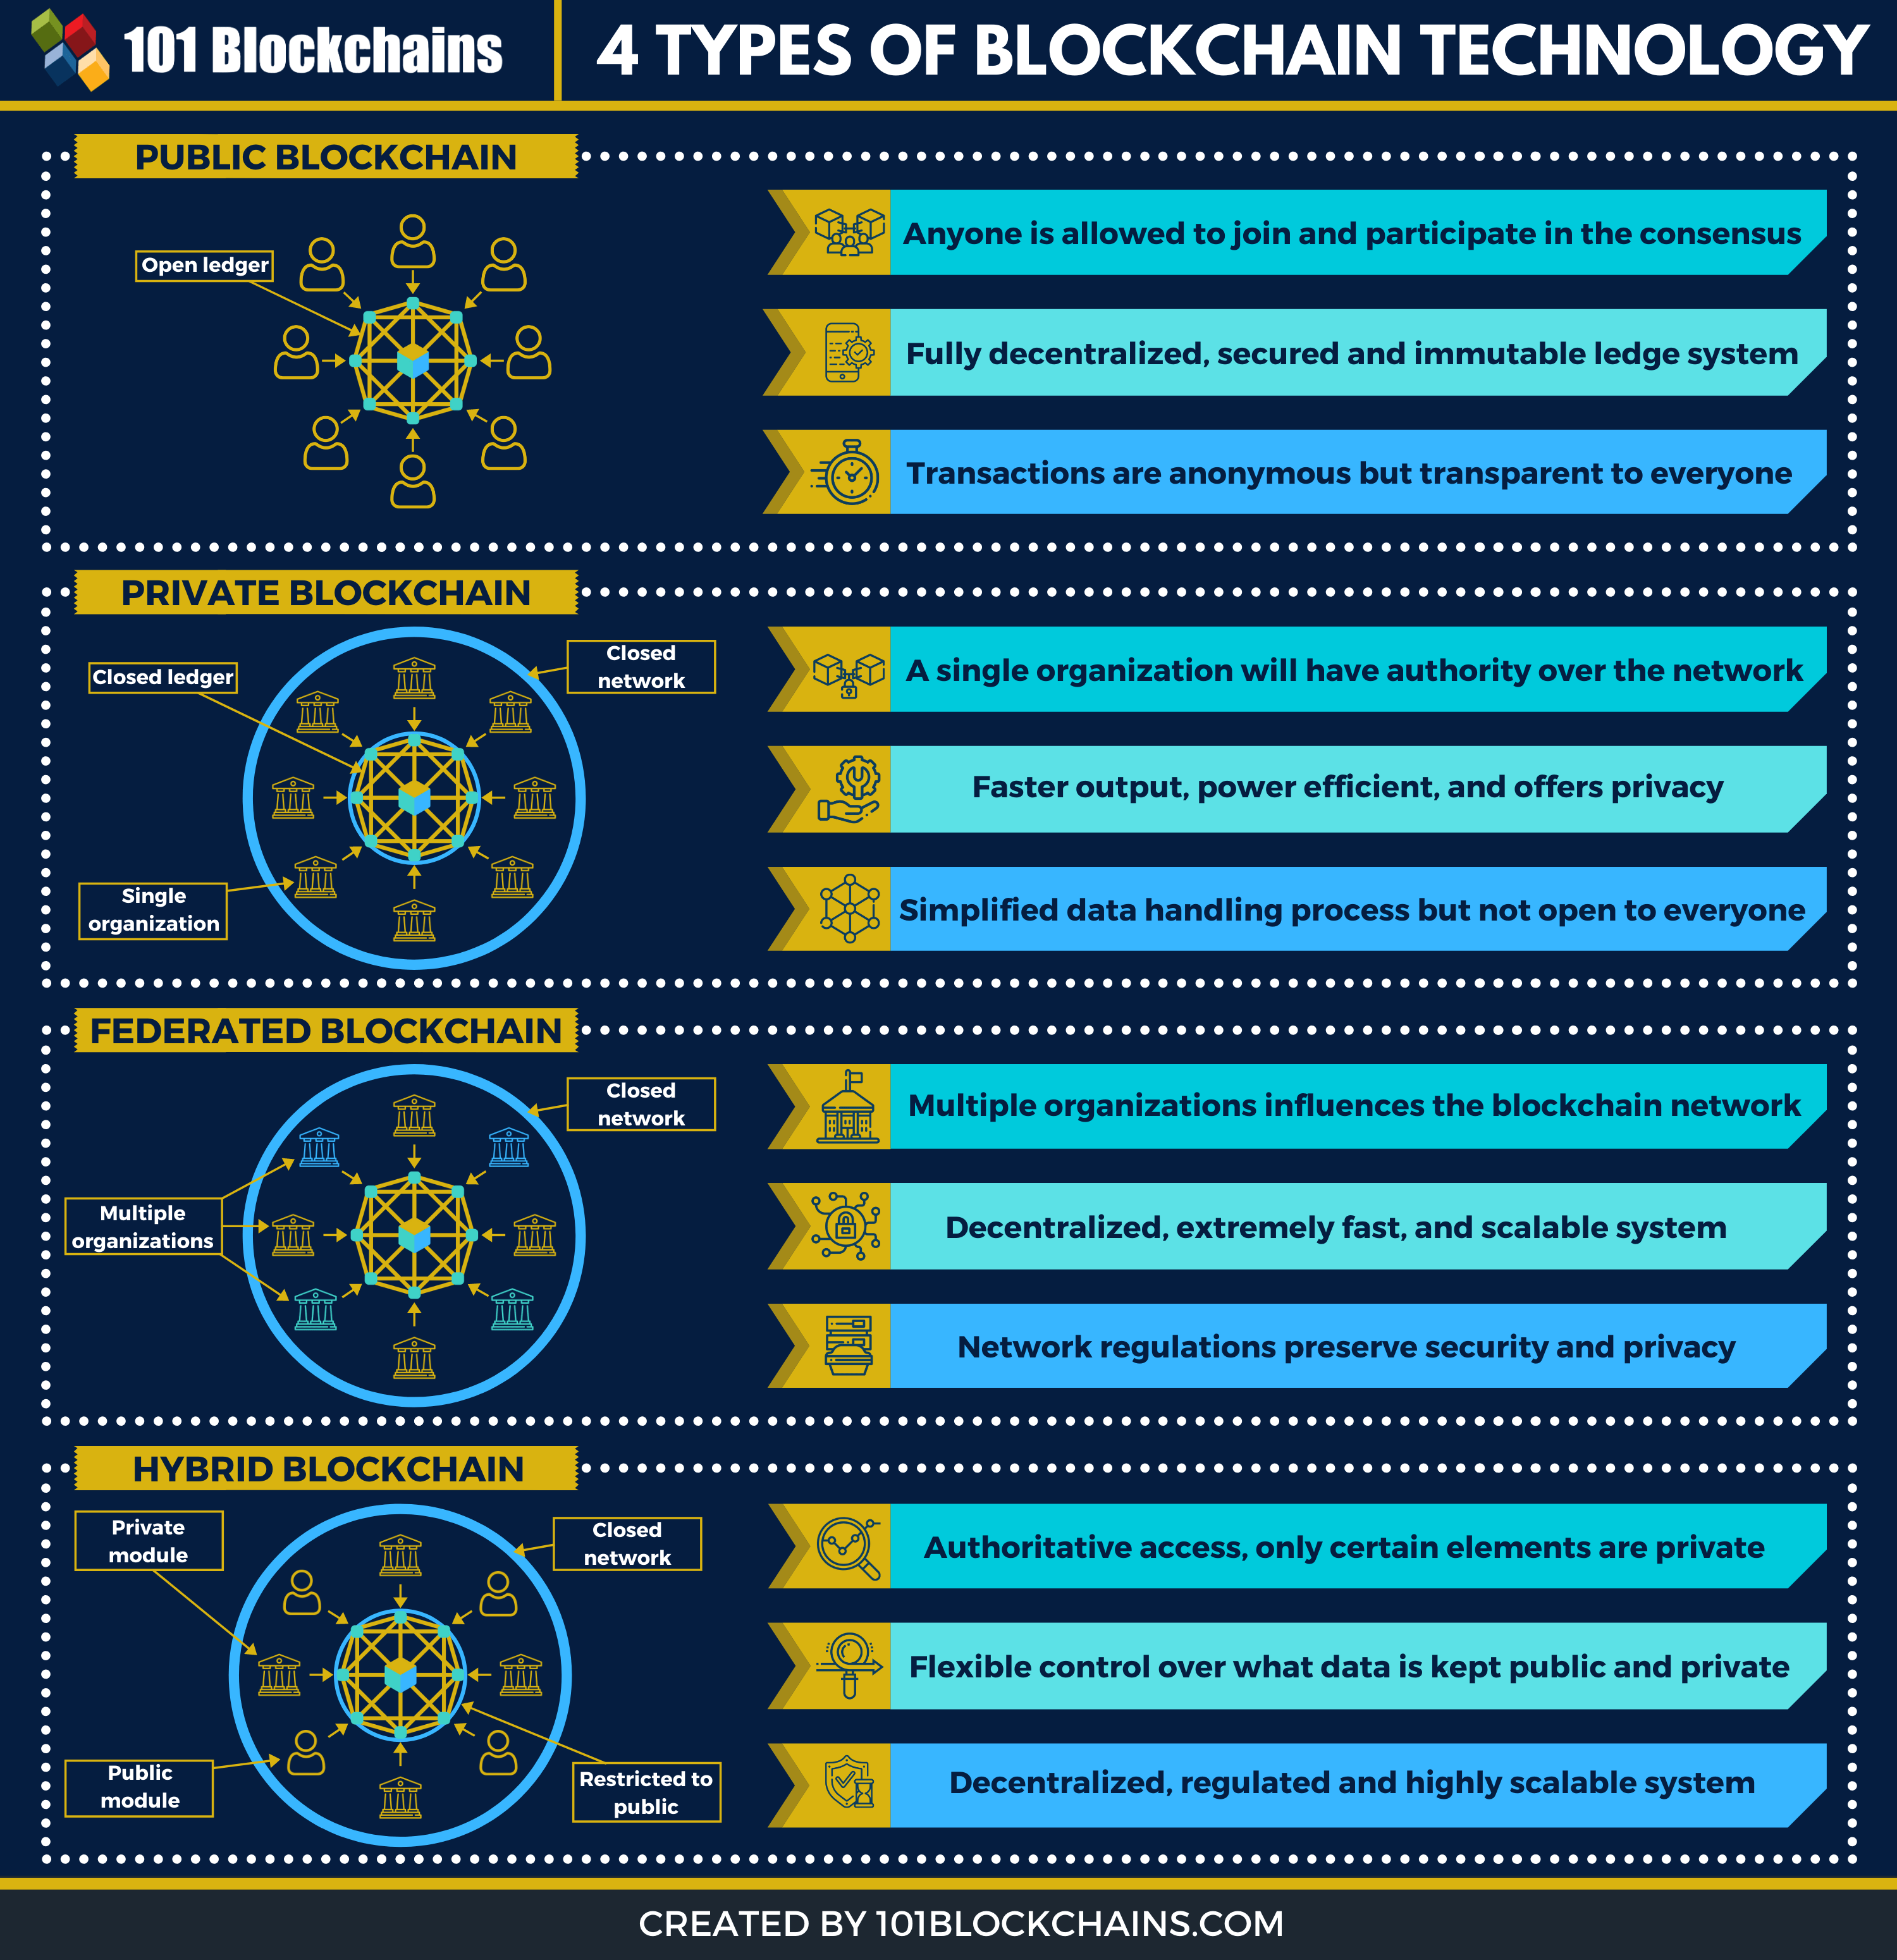 Types of Blockchain Technology